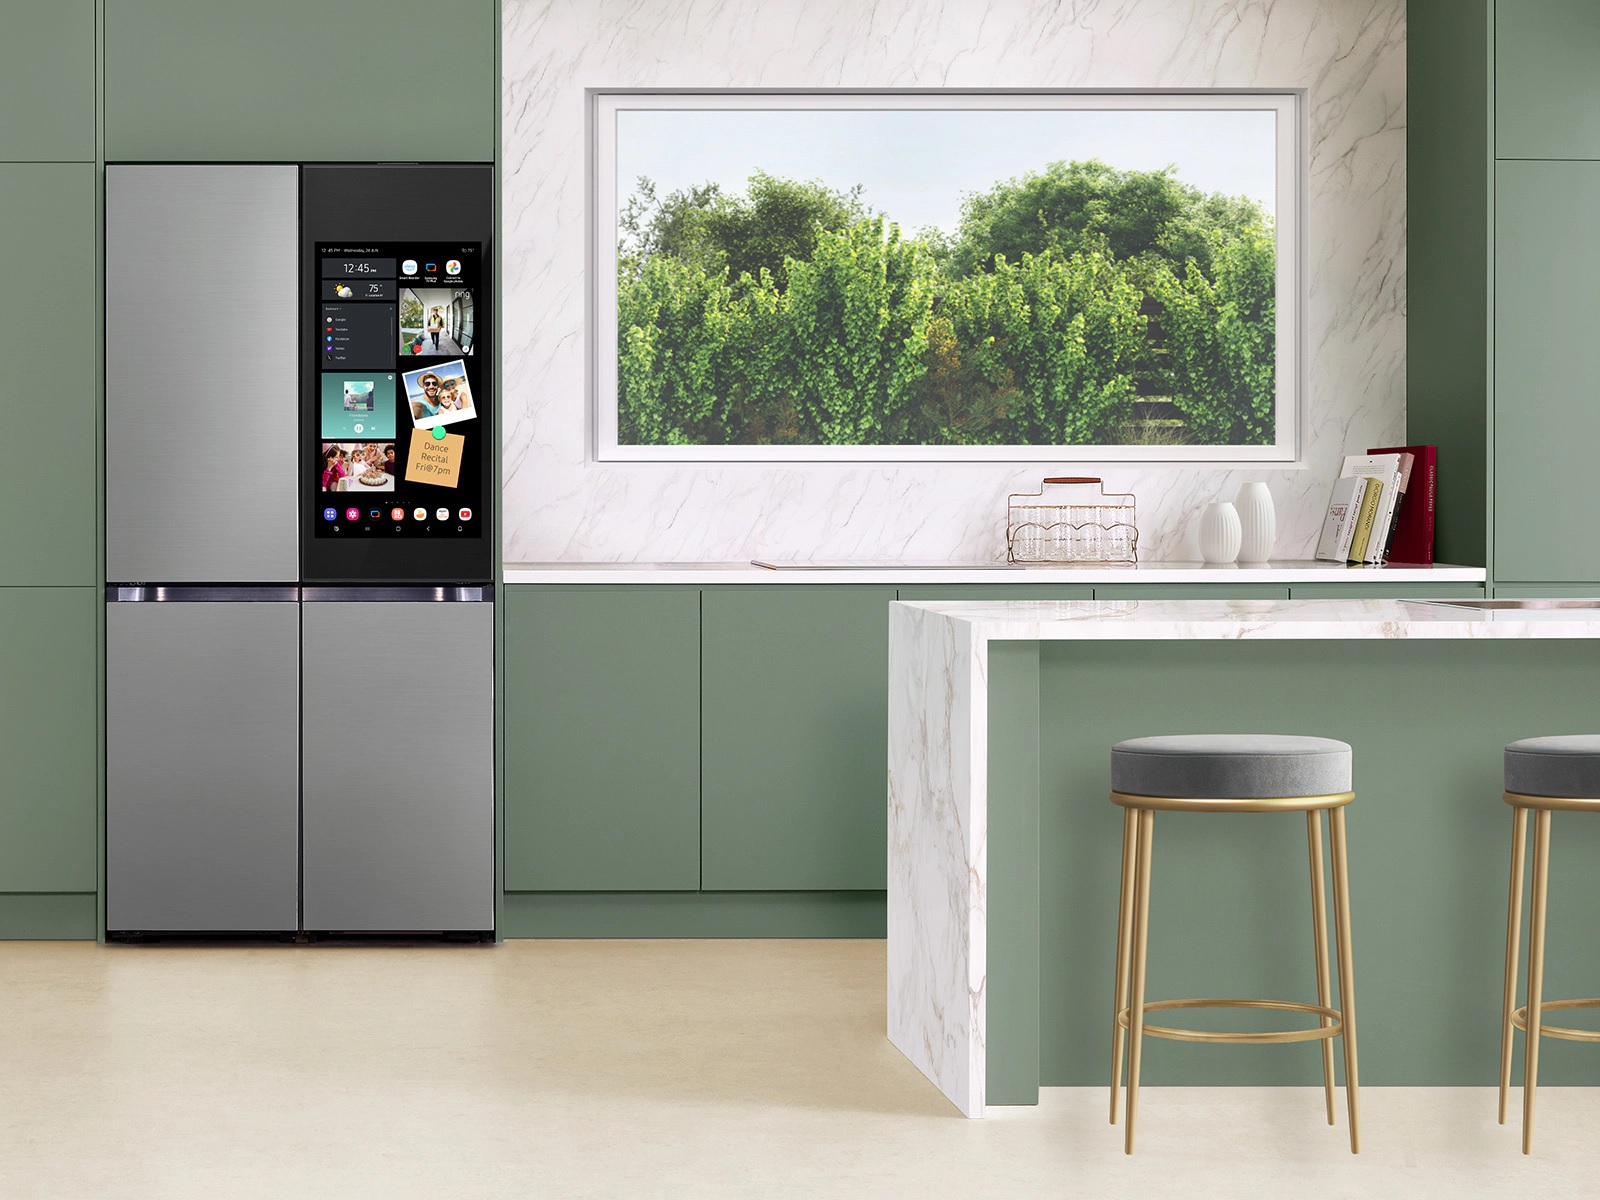 Aqui, você pode ver a tela do refrigerador Samsung Bespoke 4-Flex com AI Family Hub.